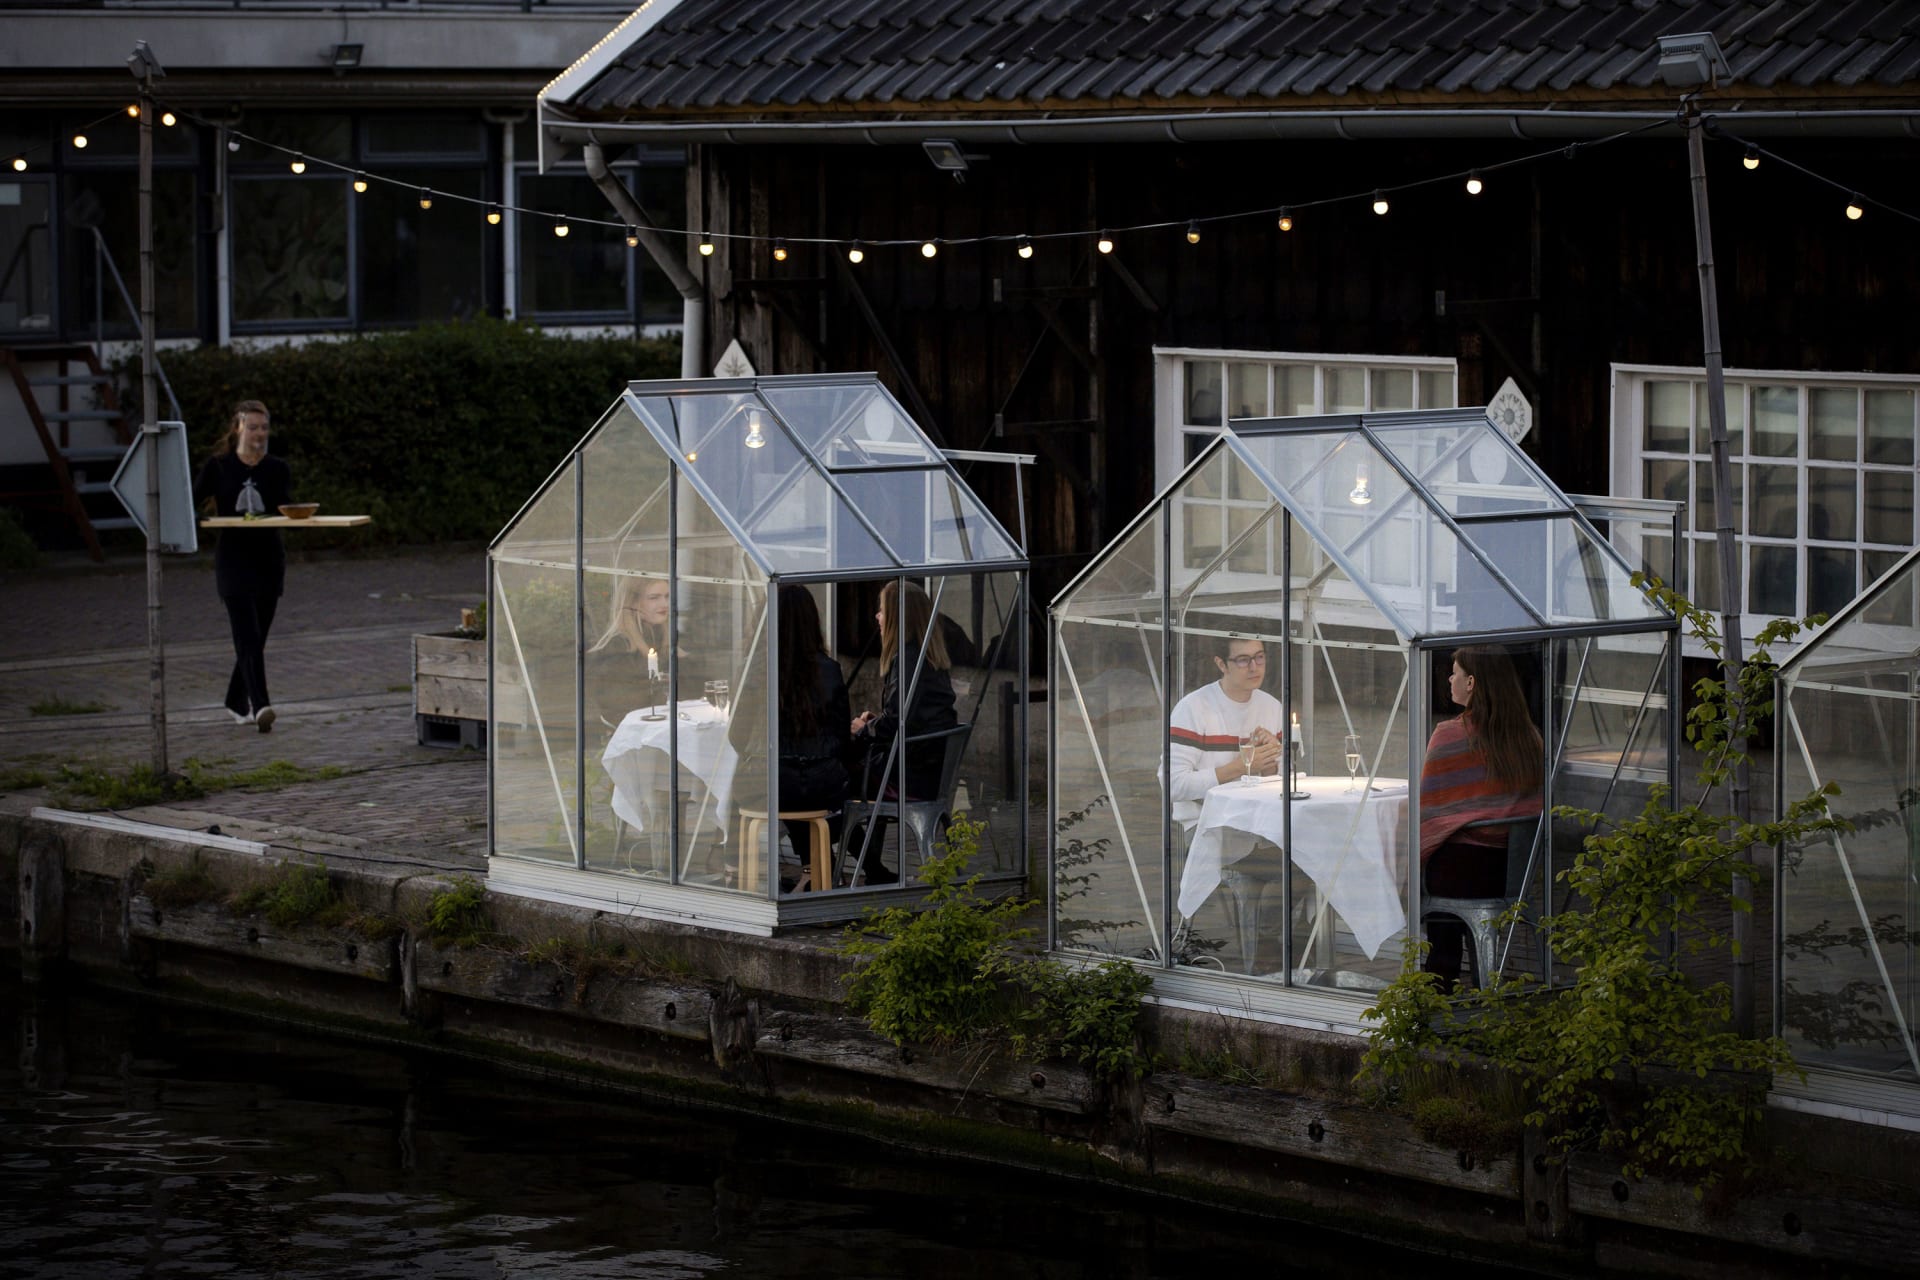 في منازل زجاجية شفافة.. مطعم بأمستردام يبتكر تجربة طعام جديدة في ظل فيروس كورونا